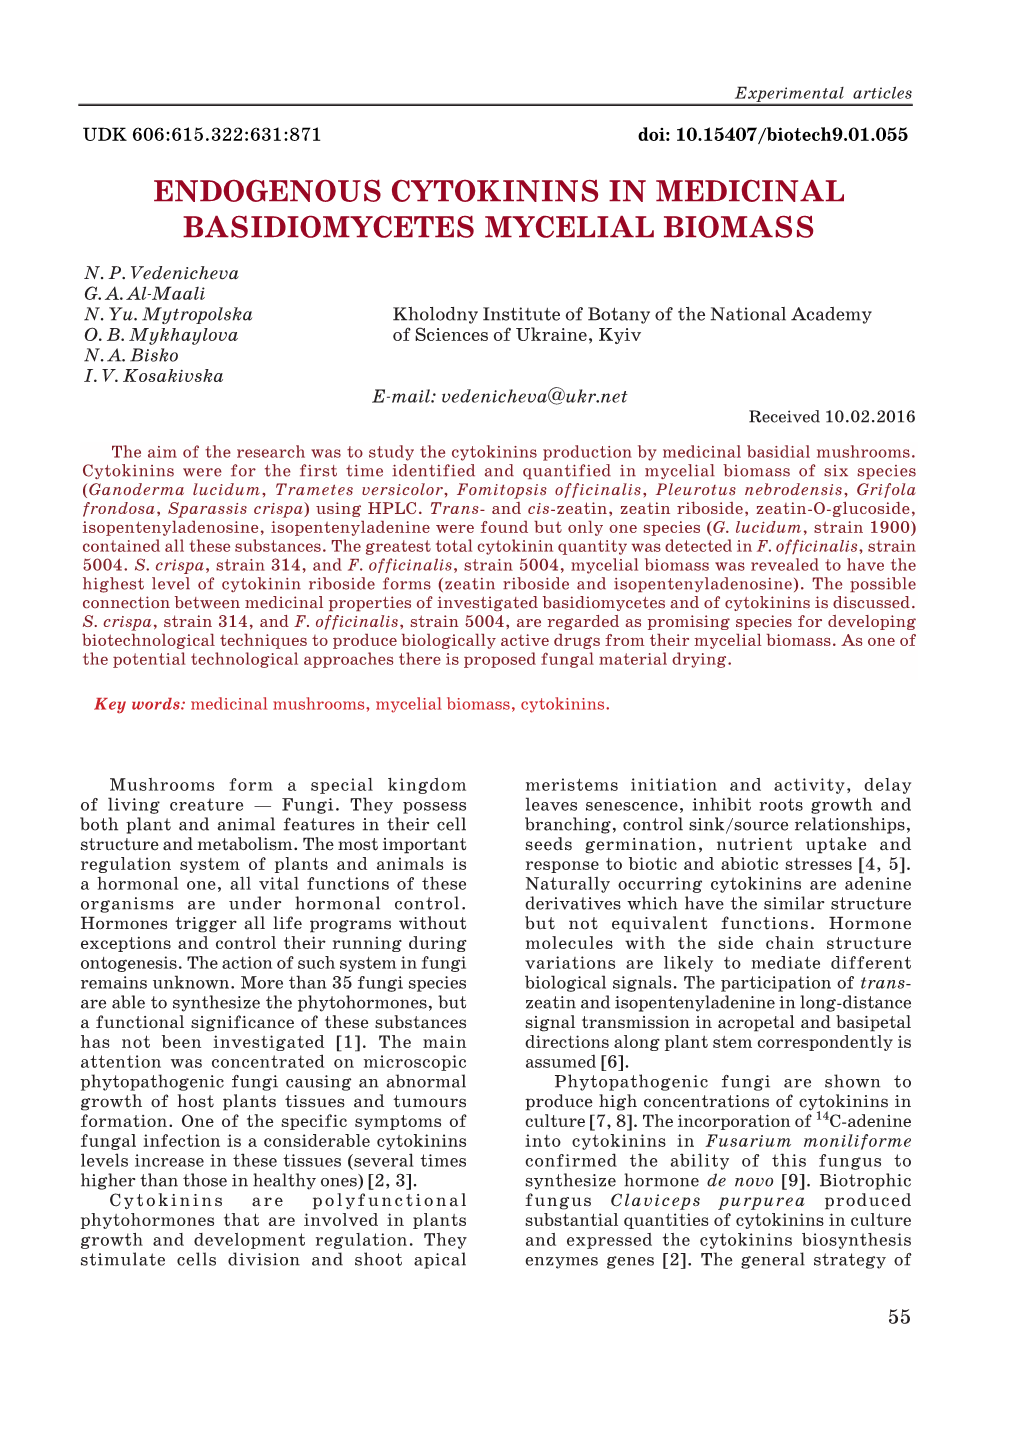 Endogenous Cytokinins in Medicinal Basidiomycetes Mycelial Biomass